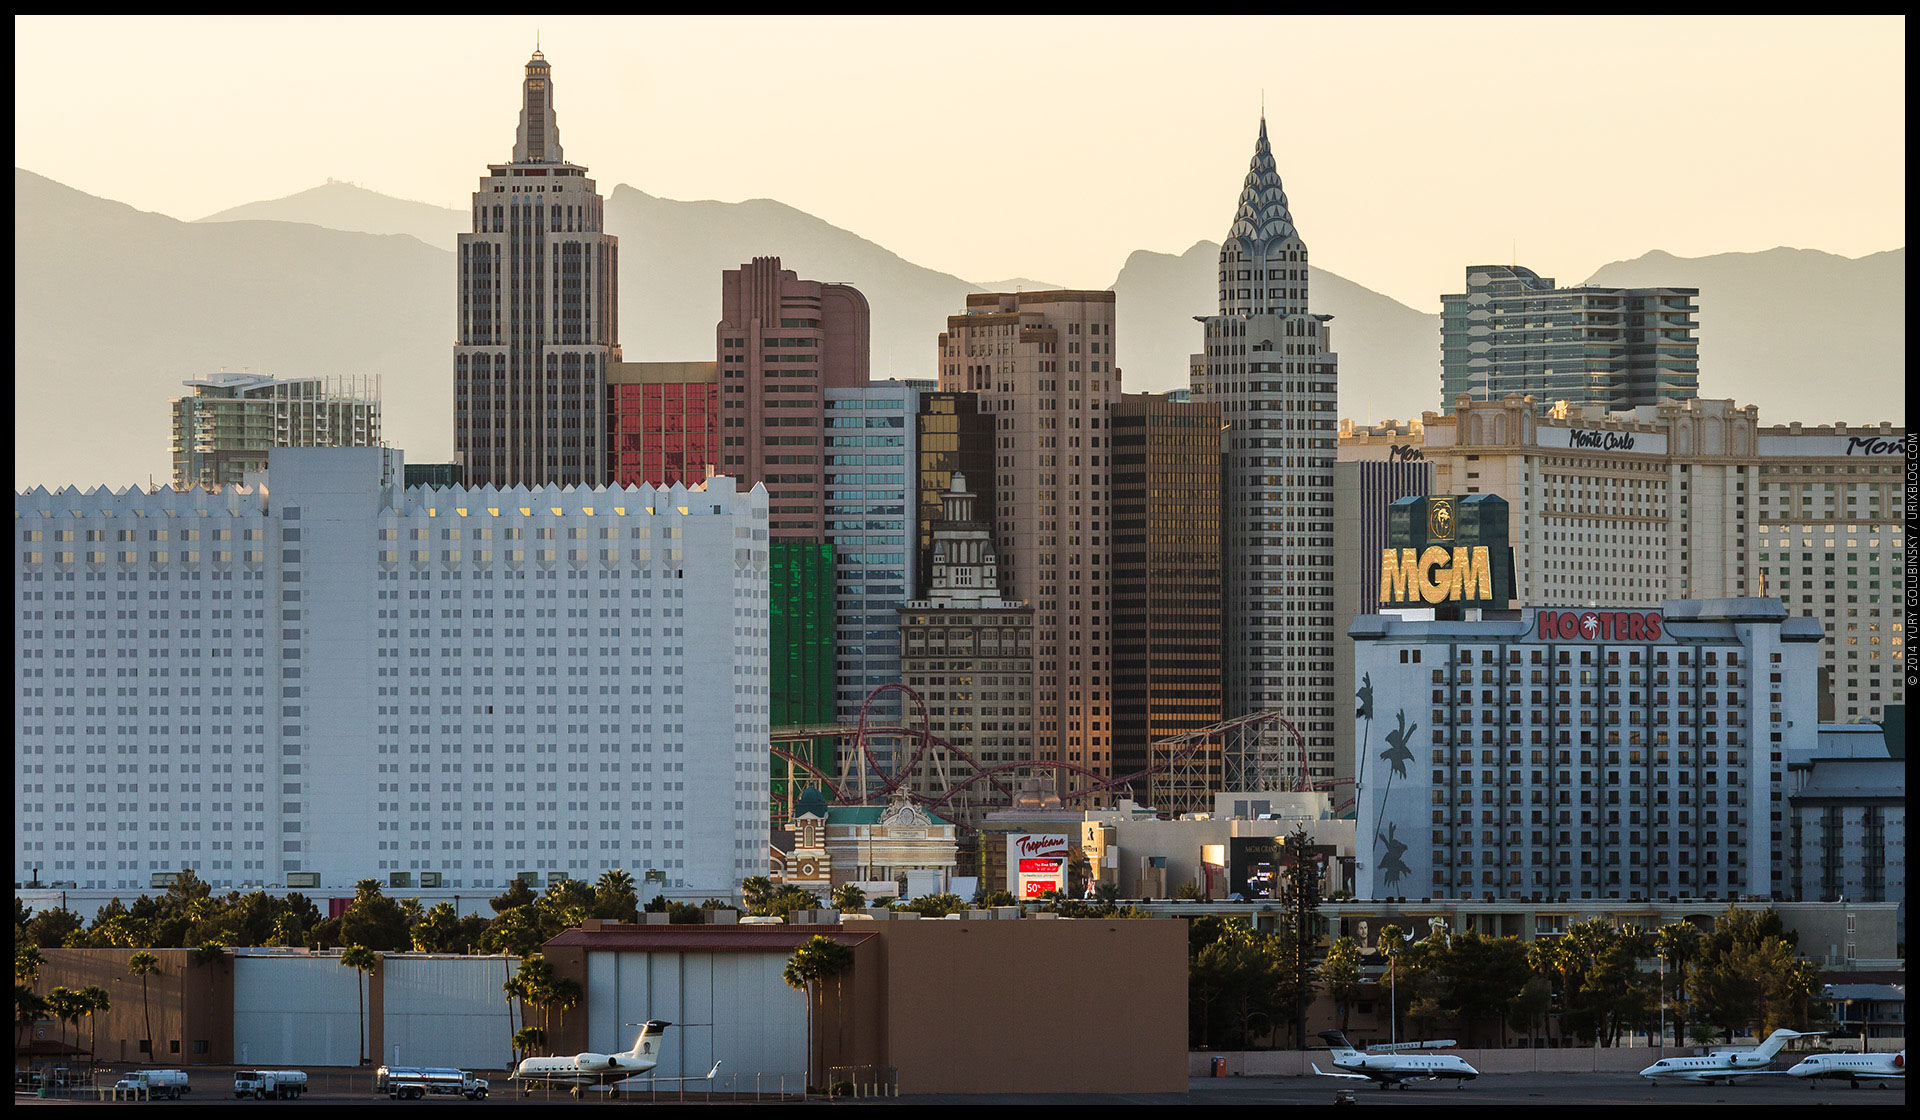 New York, casino, hotel, 2014, LAS, Las Vegas McCarran International airport, strip, LV, Clark County, USA, Nevada, panorama, horizon, city